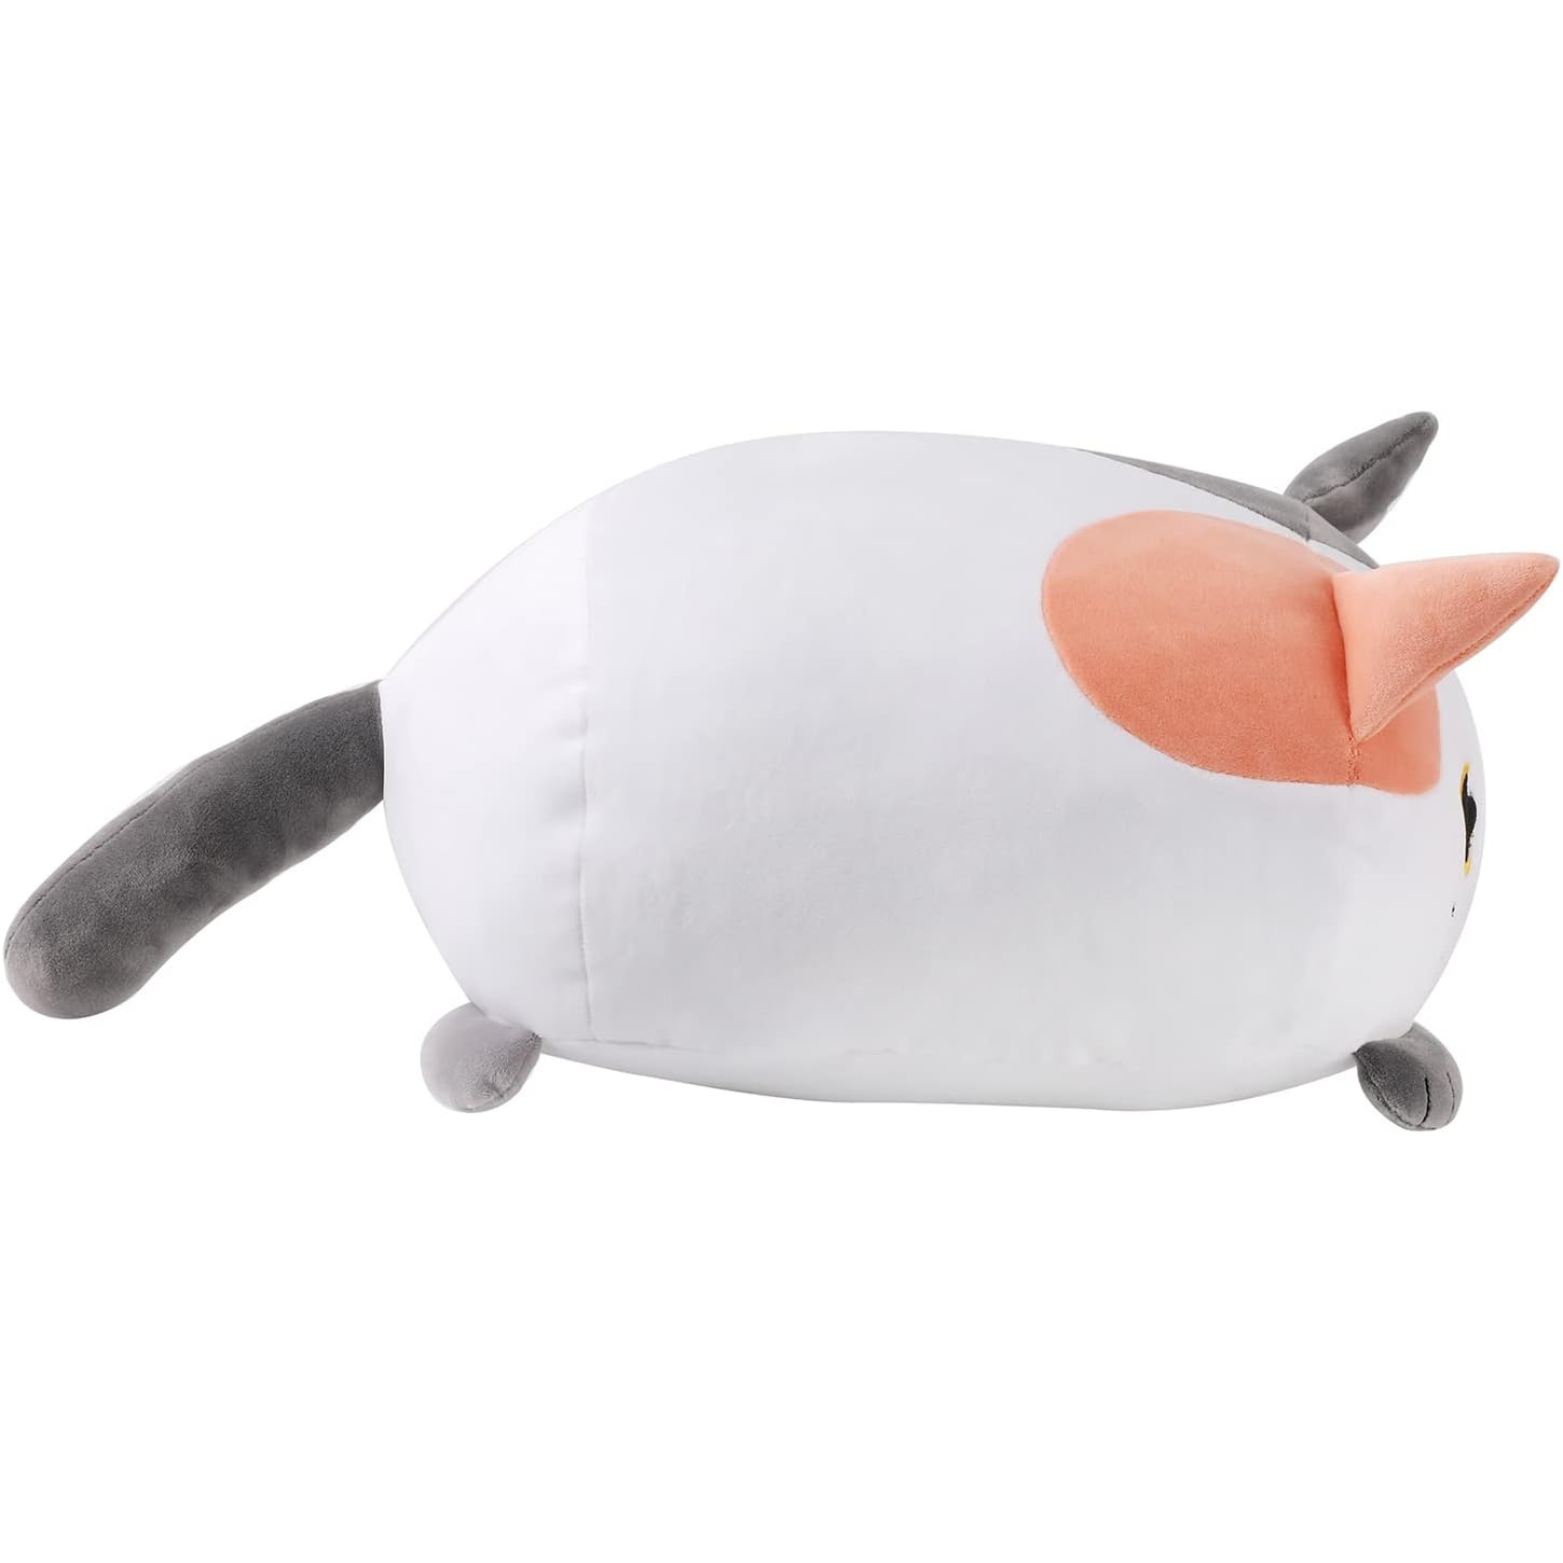 Squishmallow - Cat orange pillow